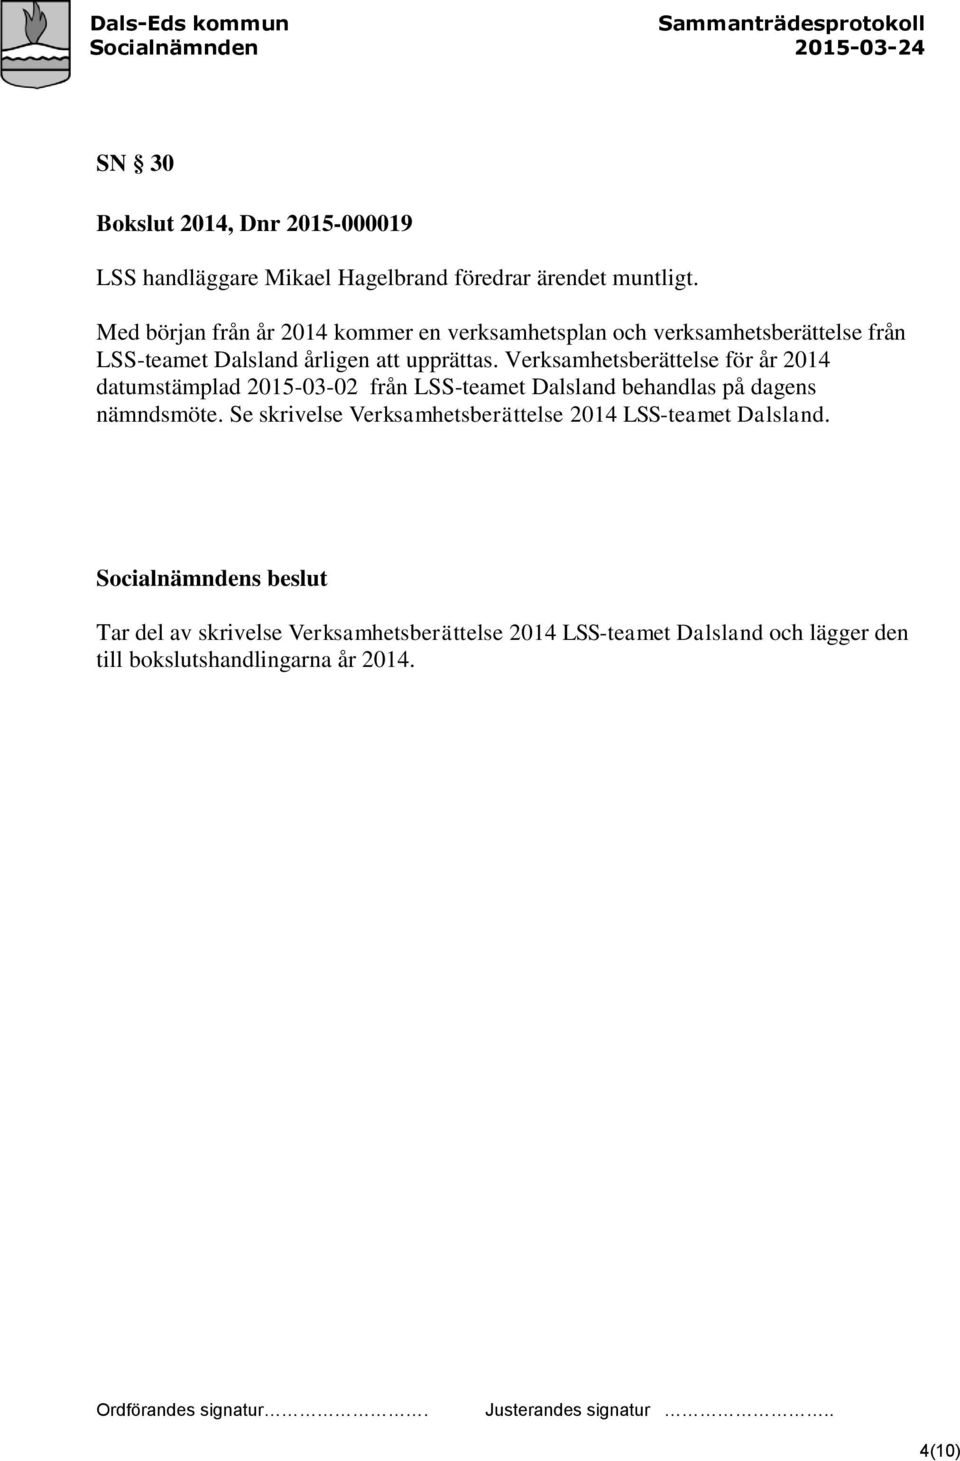 Verksamhetsberättelse för år 2014 datumstämplad 2015-03-02 från LSS-teamet Dalsland behandlas på dagens nämndsmöte.